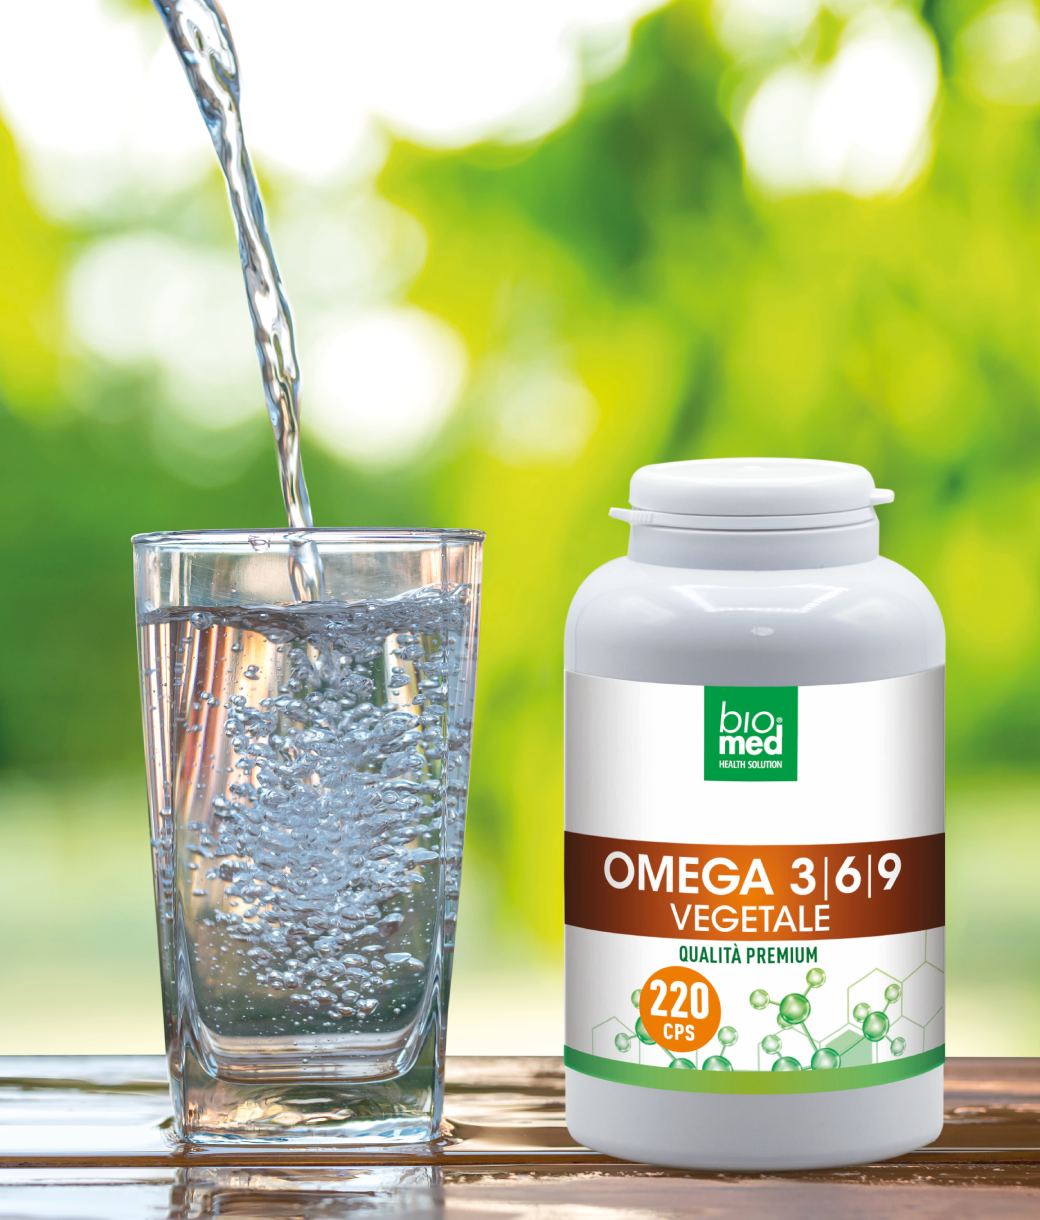 Omega 3-6-9 Biomed ogni capsula un concentrato di natura